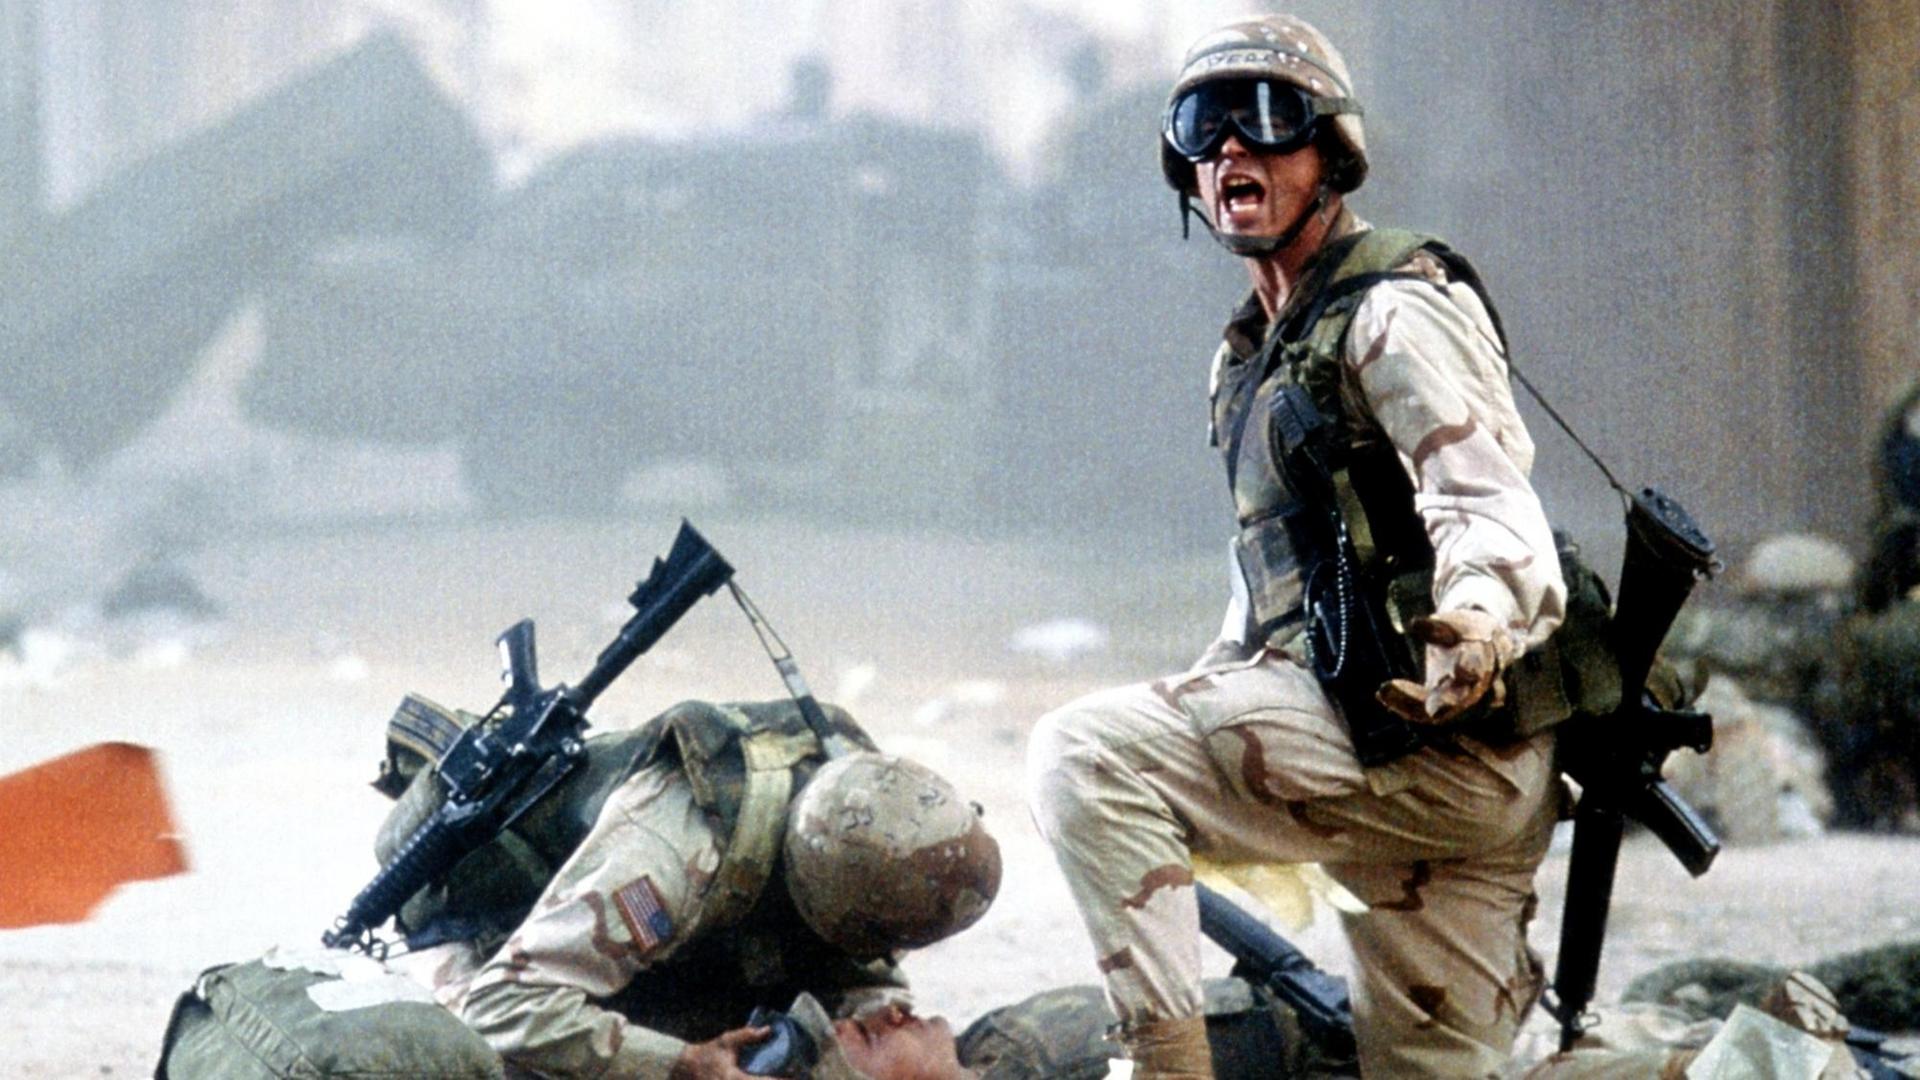 Der US-Elitesoldat Sergeant Matt Eversman (Josh Harnett, r.) kniet im Kinofilm "Black Hawk Down" während eines Gefechts in Somalias Hauptstadt Mogadischu bei einem verletzten Kameraden.